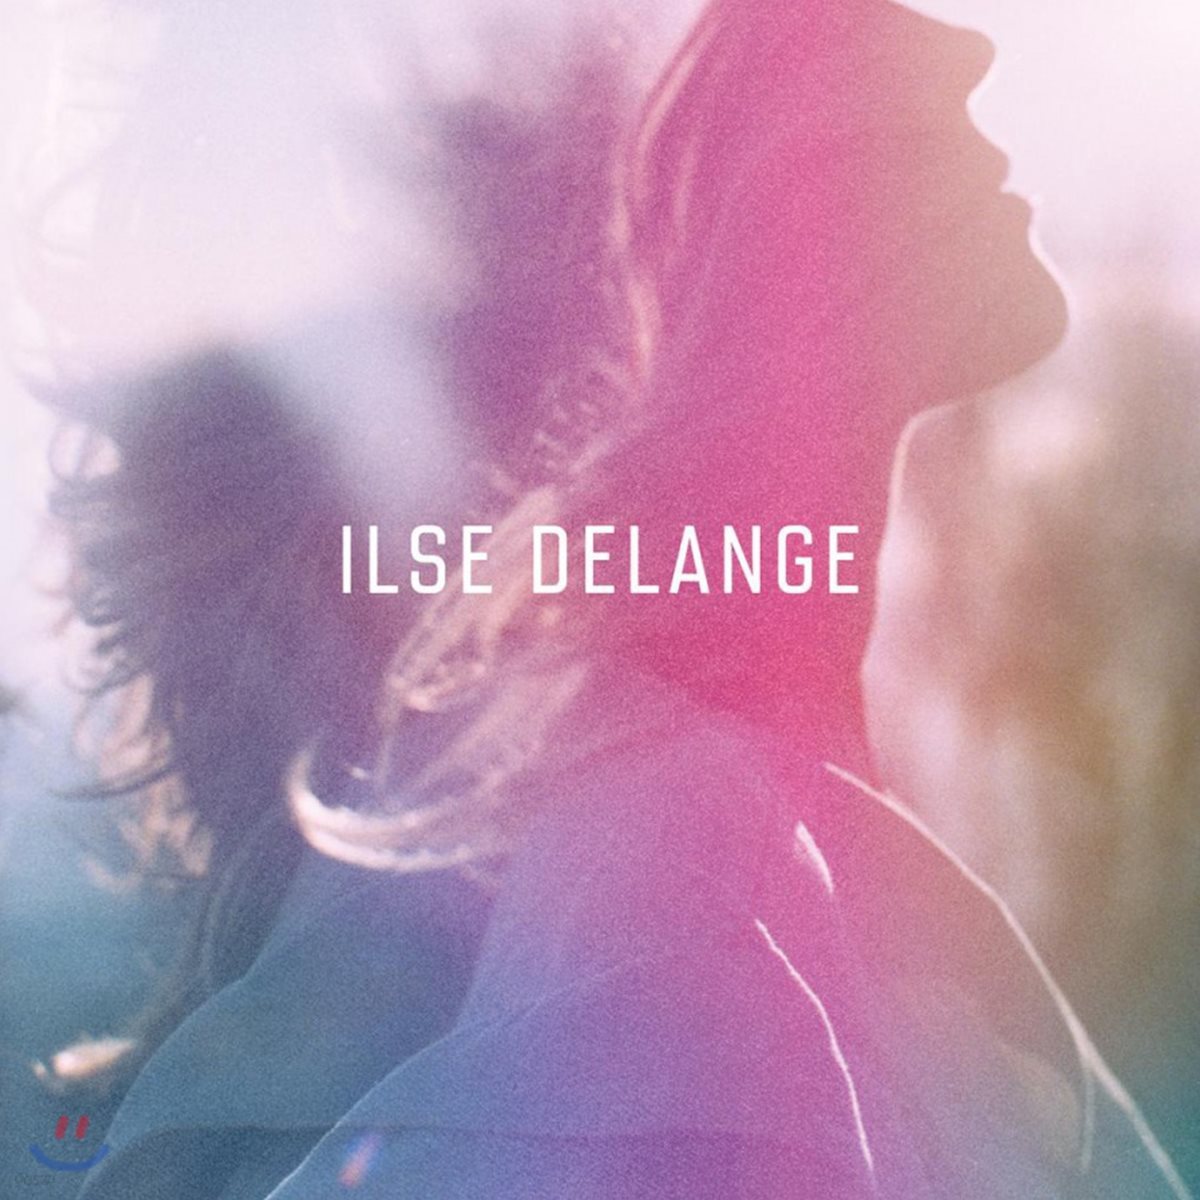 Ilse DeLange - Ilse DeLange [LP]